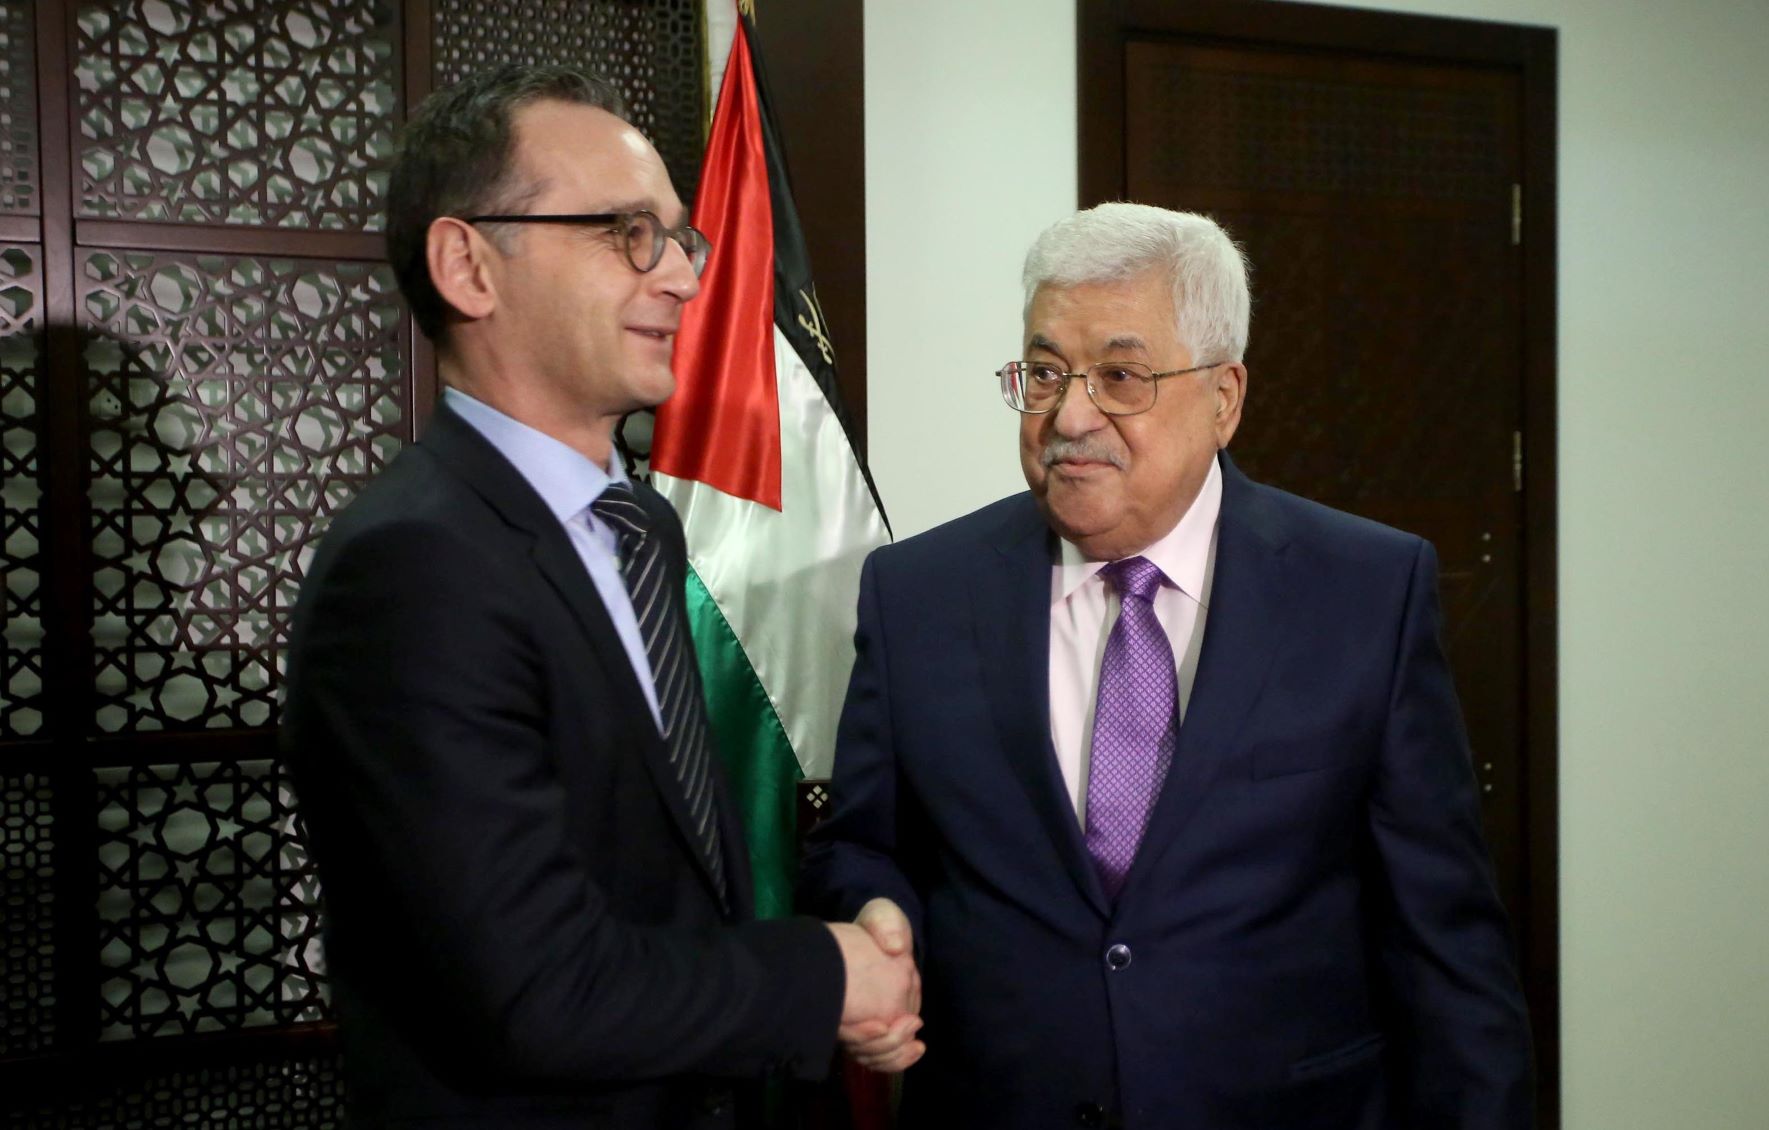 Heiko Mass (esq.) com o presidente da Palestina, Mahmoud Abbas, em Ramallah, em março deste ano. Unrwa passa por crise financeira